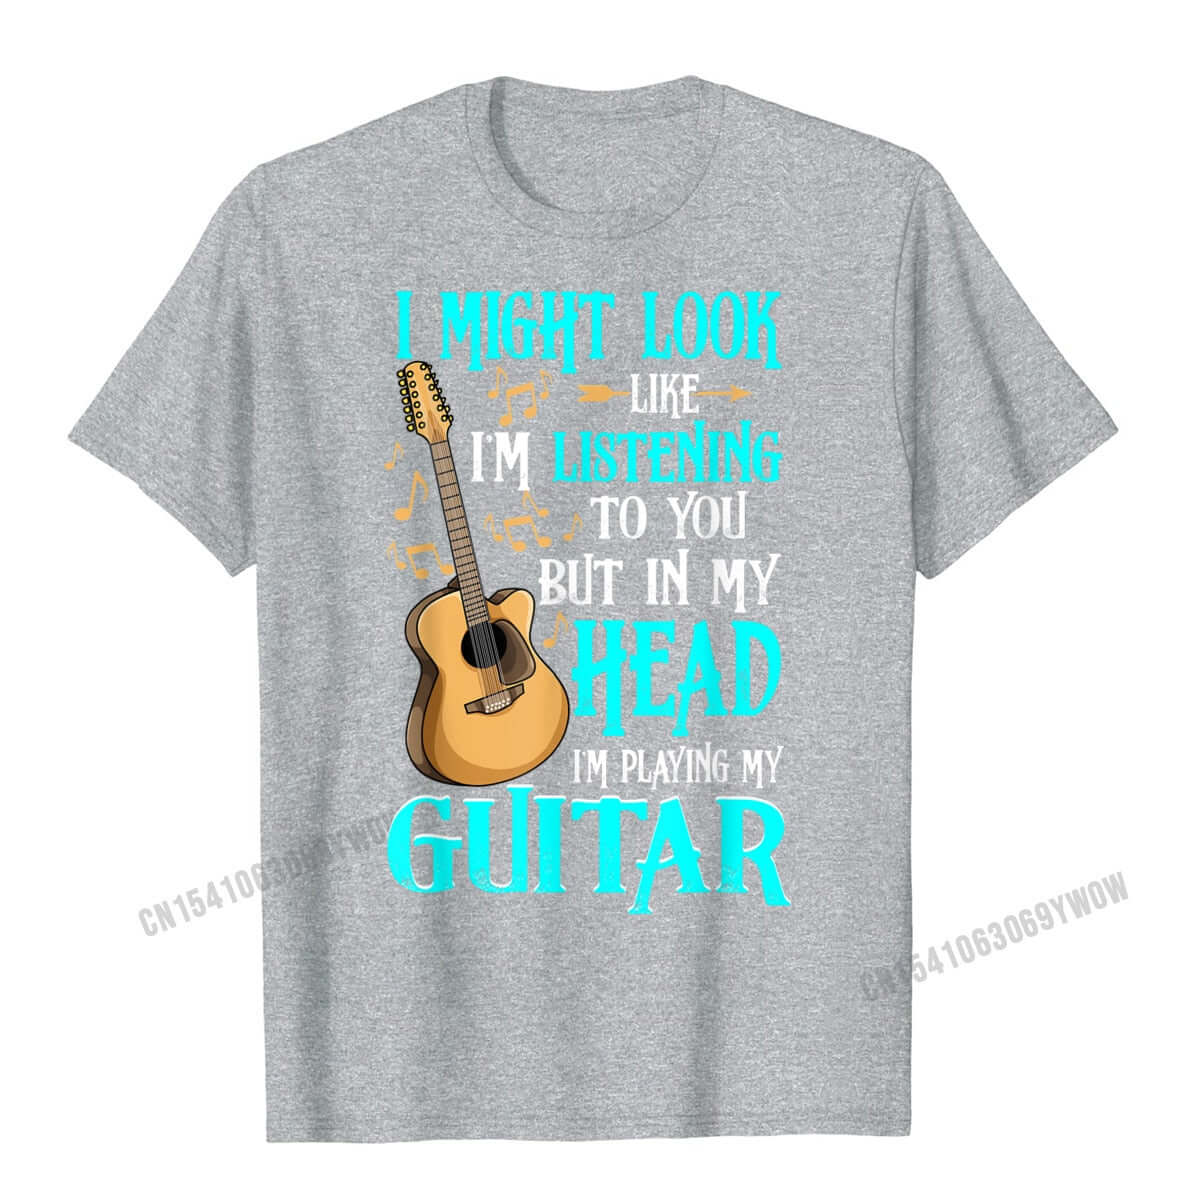 Unique and funny guitar print t-shirt Gray guitarmetrics